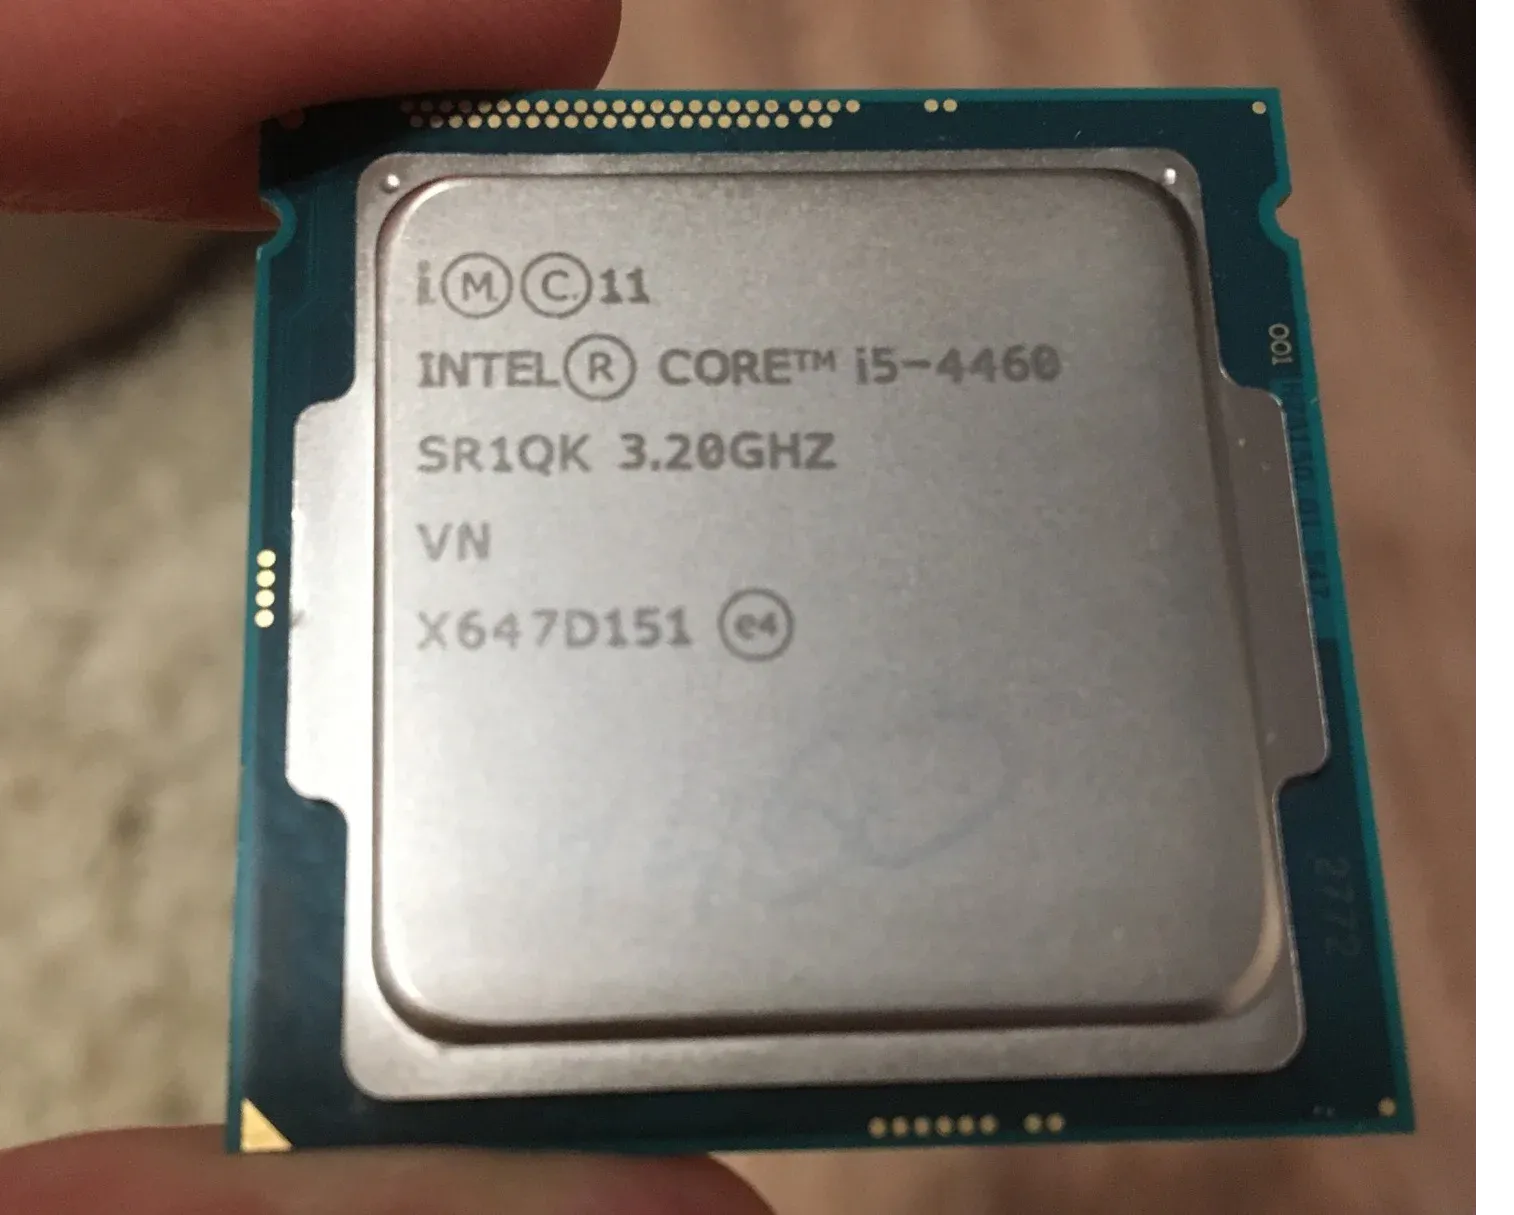 Интел i5 4460. Intel Core i5-4460. I5 4460. I5 4460 характеристики. I5 4460- 4 ядра 3.2Гц.